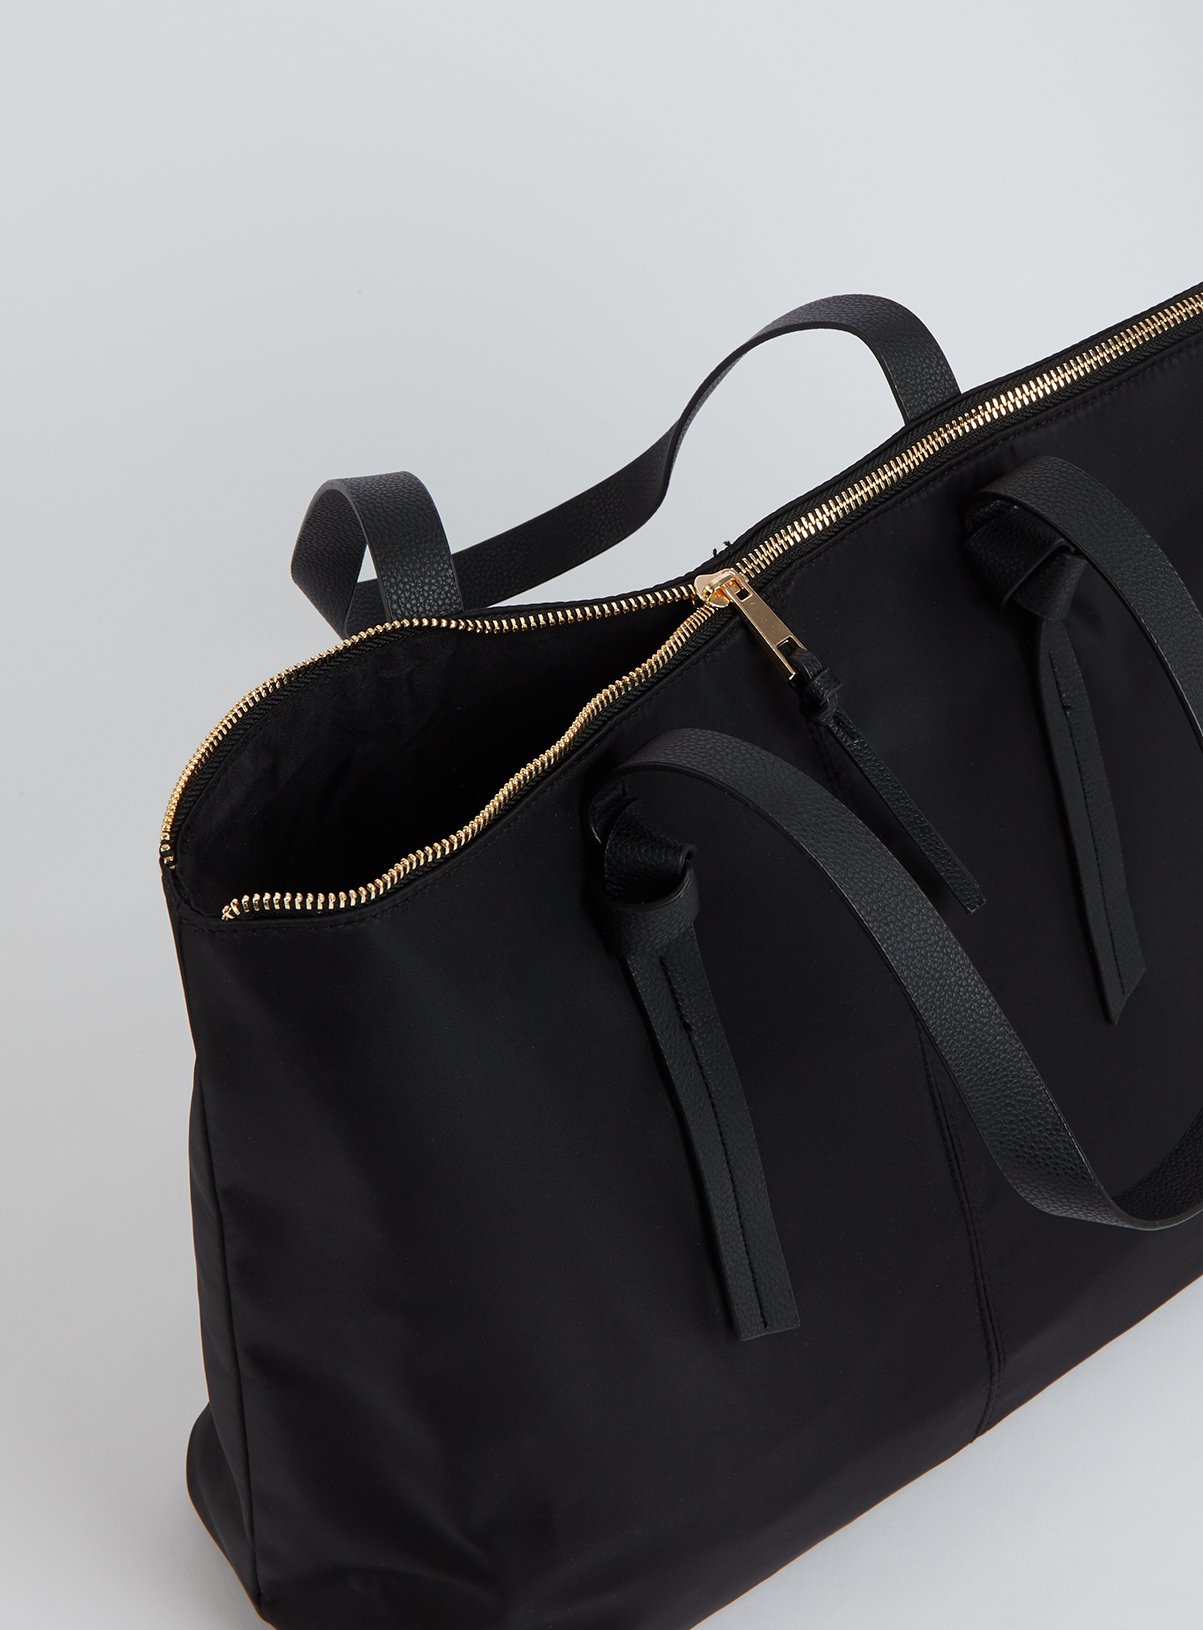 Black Nylon Shopper Bag Review